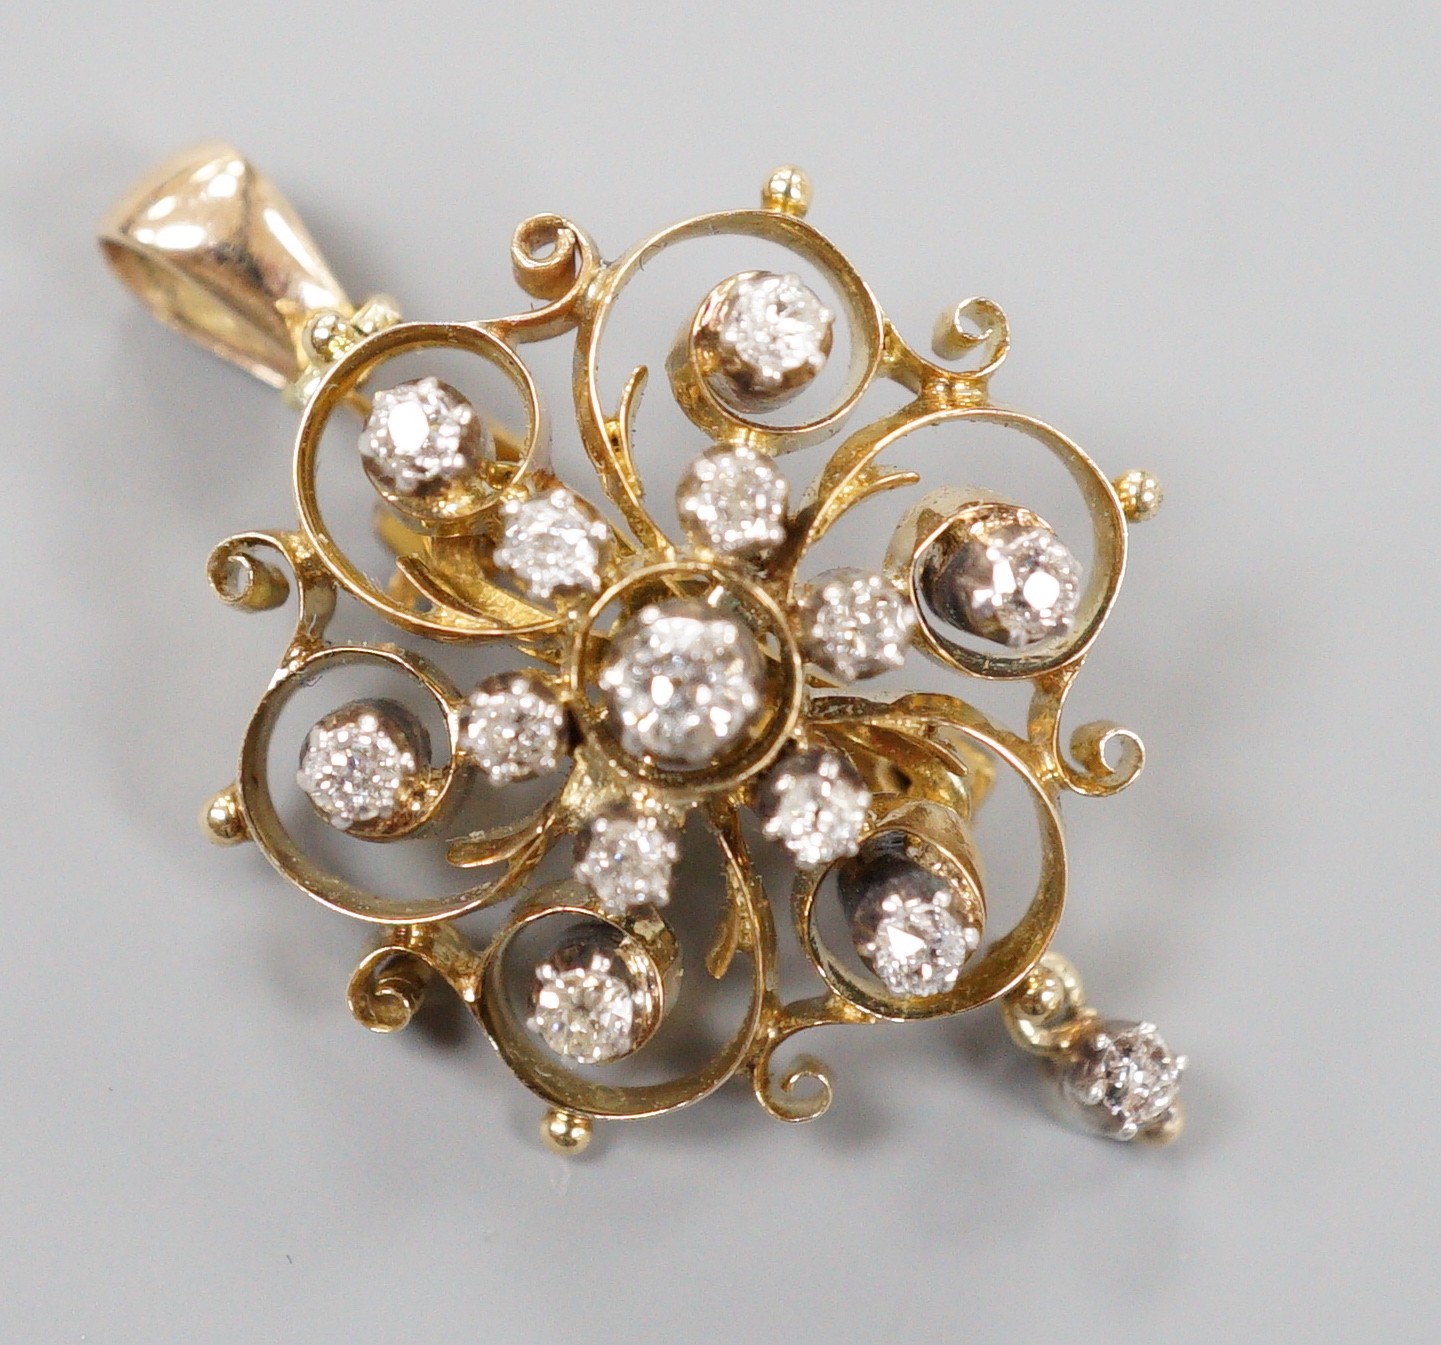 An Edwardian pierced 15ct and diamond cluster set drop pendant brooch, 24mm, gross weight 6.1 grams.